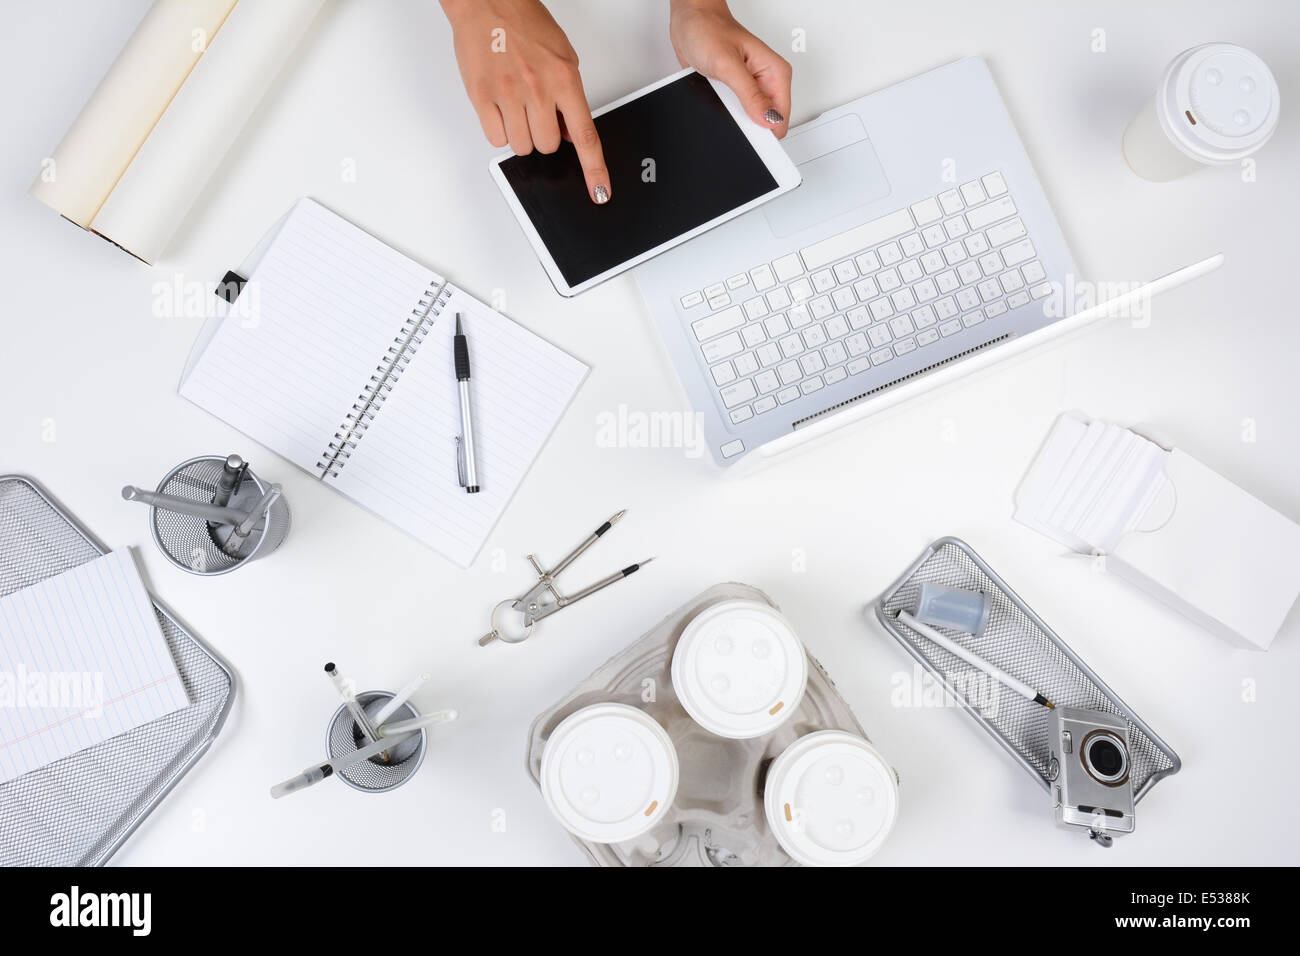 High angle shot d'un bureau blanc principalement avec des objets du bureau blanc et argent, avec a woman holding a tablet computer Banque D'Images